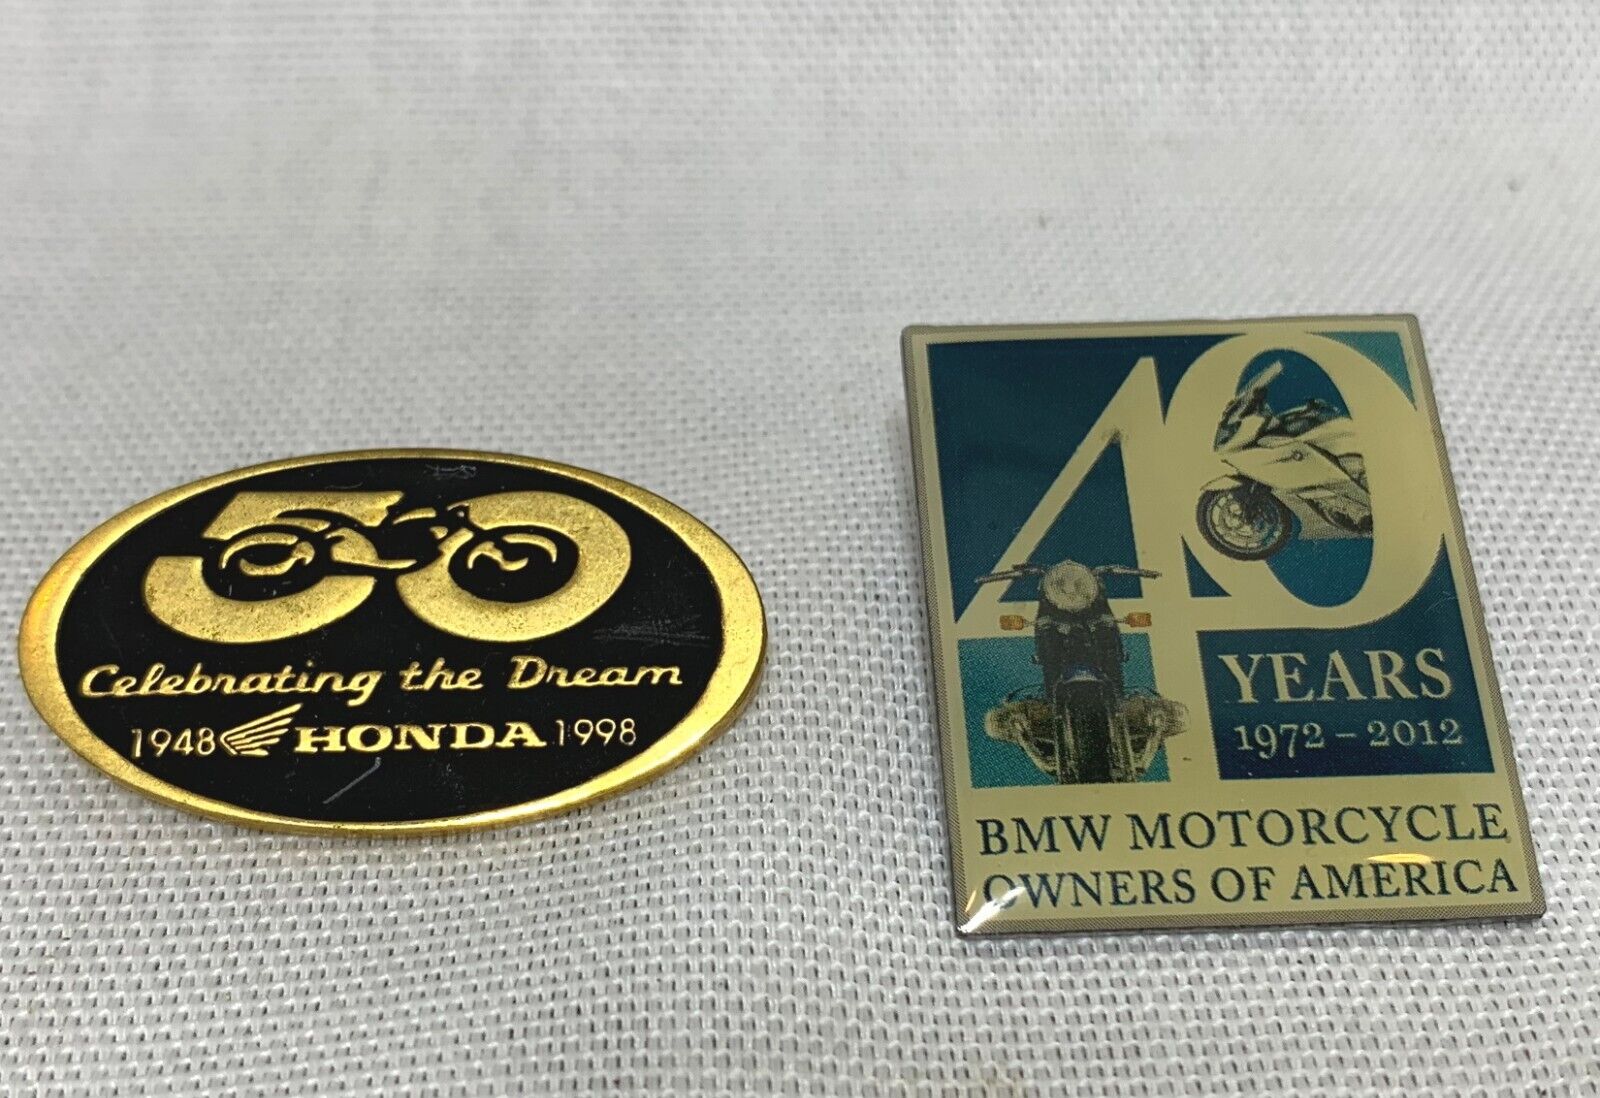 2 Vintage Motorcycle Pins 1998 HONDA 50 Years, 2012 BMW 40 Years Anniversary